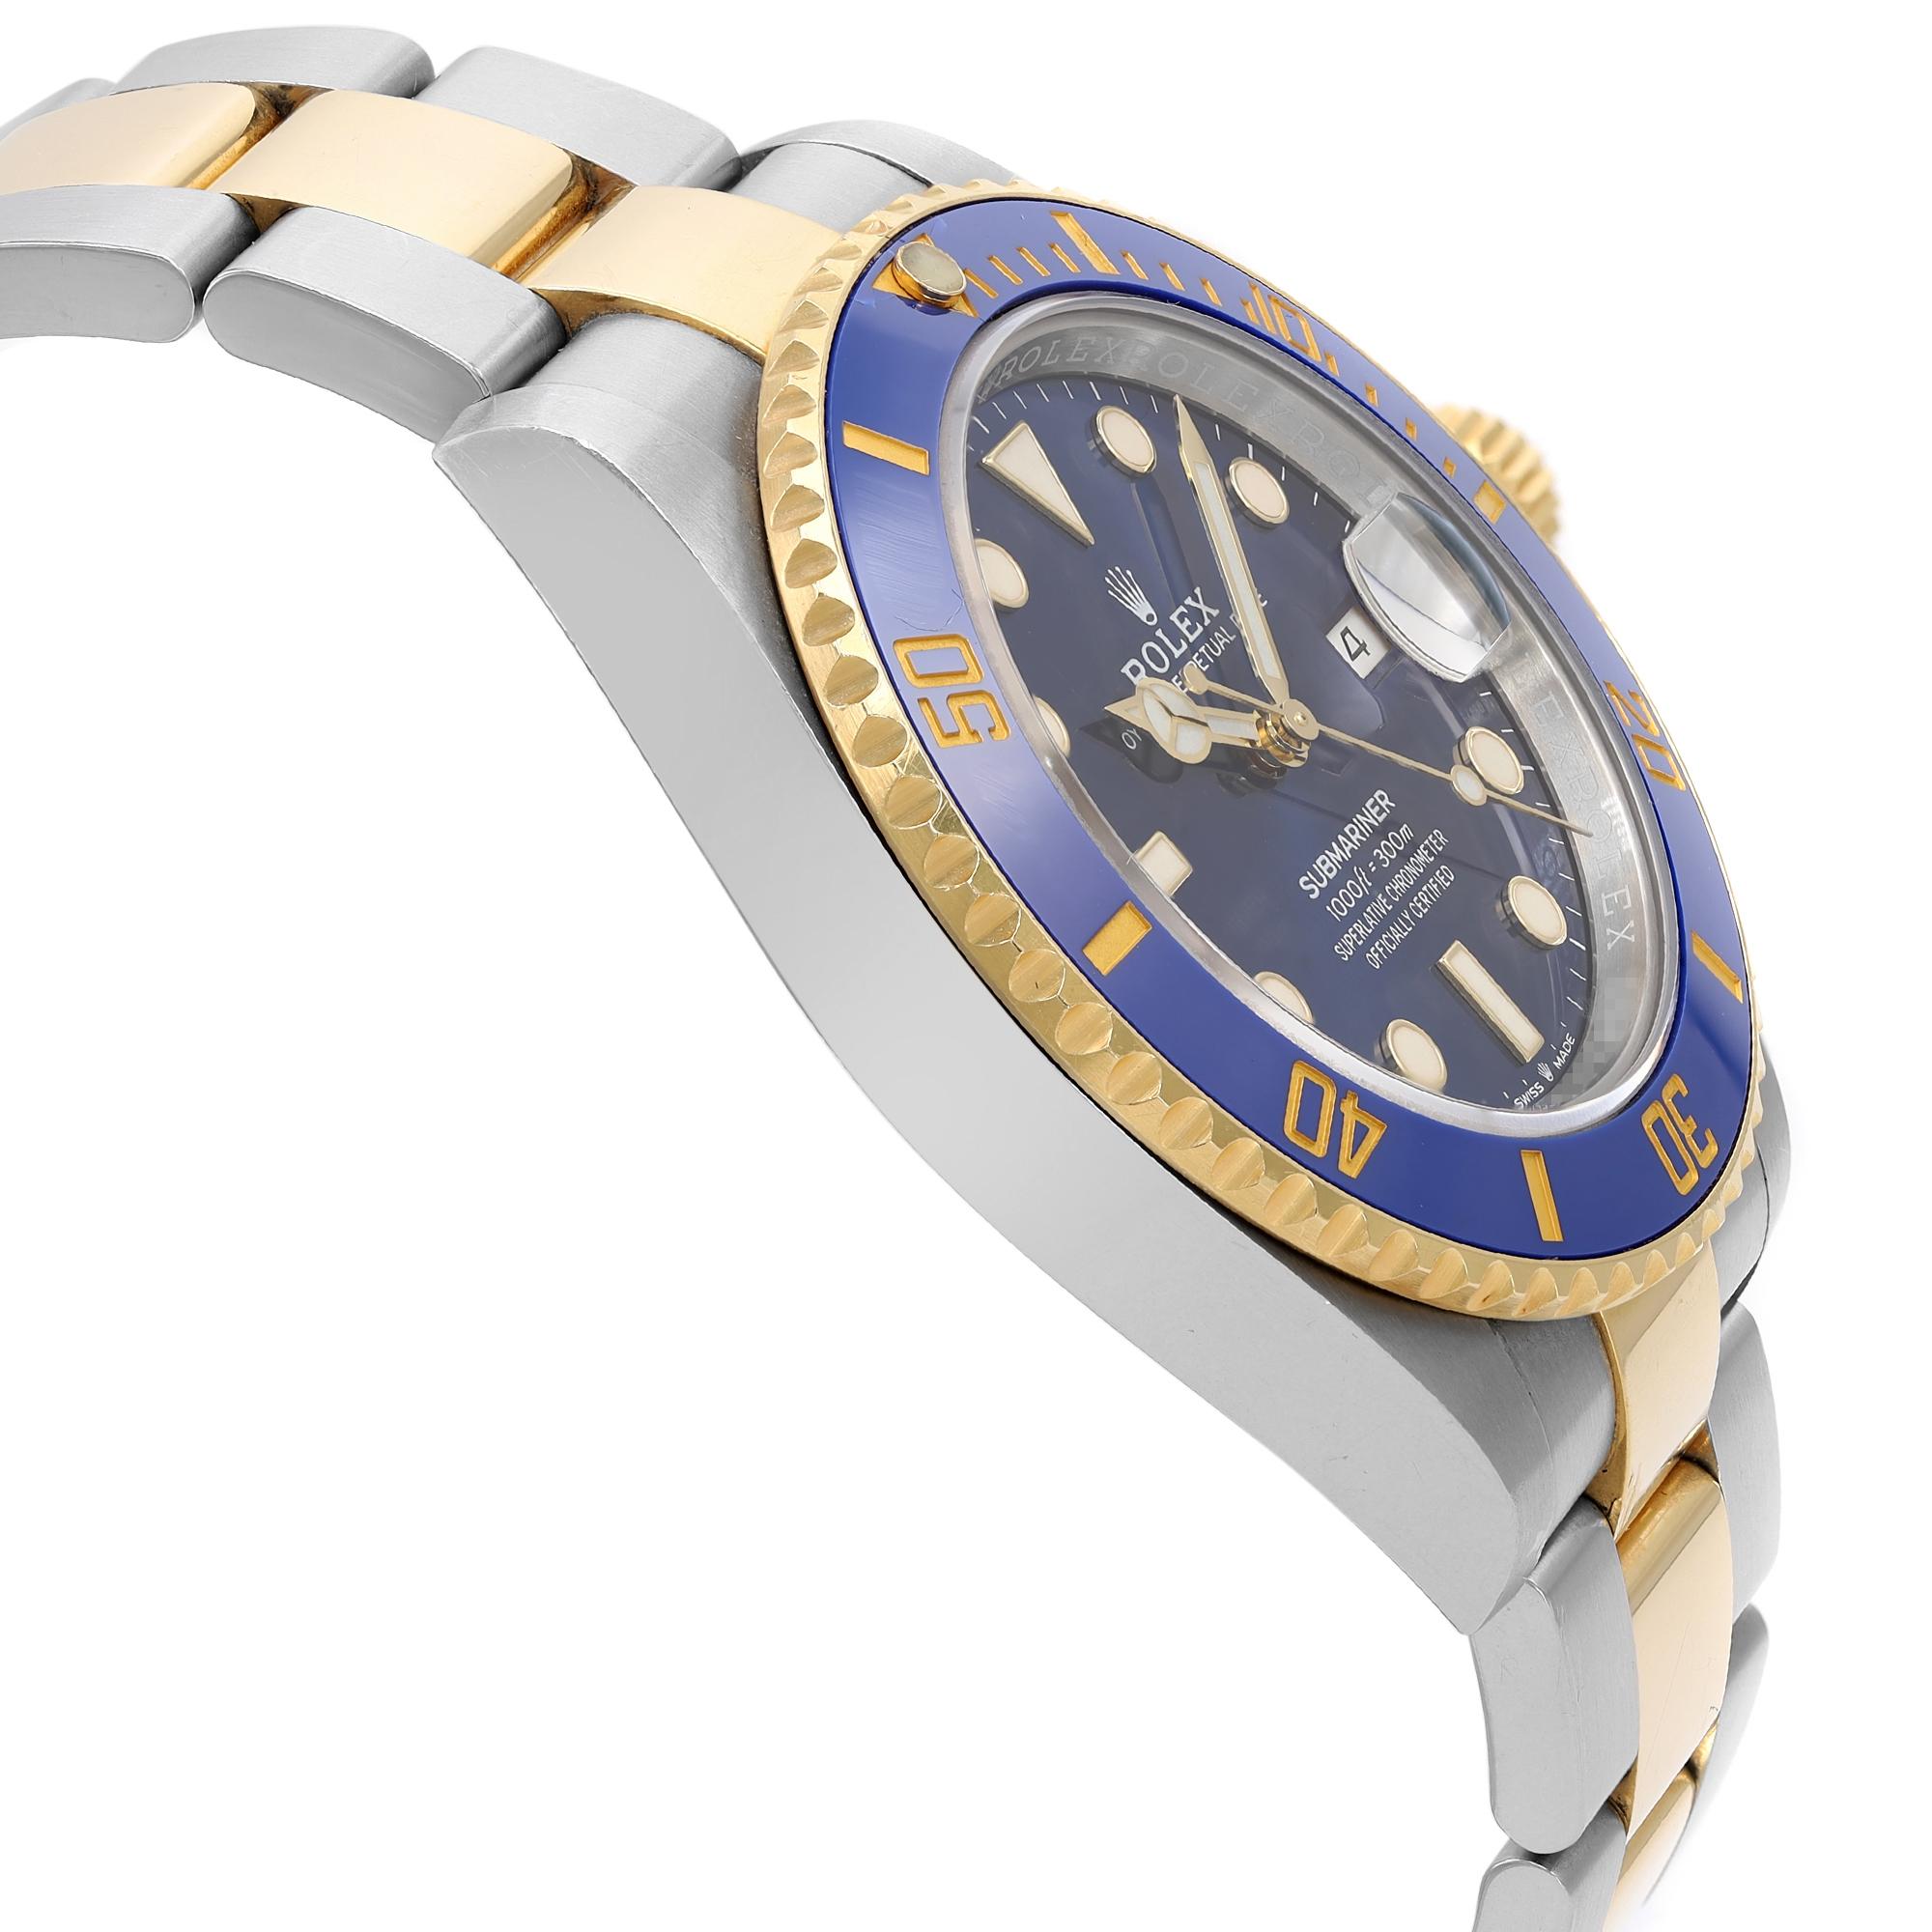  Rolex Montre Submariner automatique en acier et or jaune 18 carats avec cadran bleu 126613LB Pour hommes 